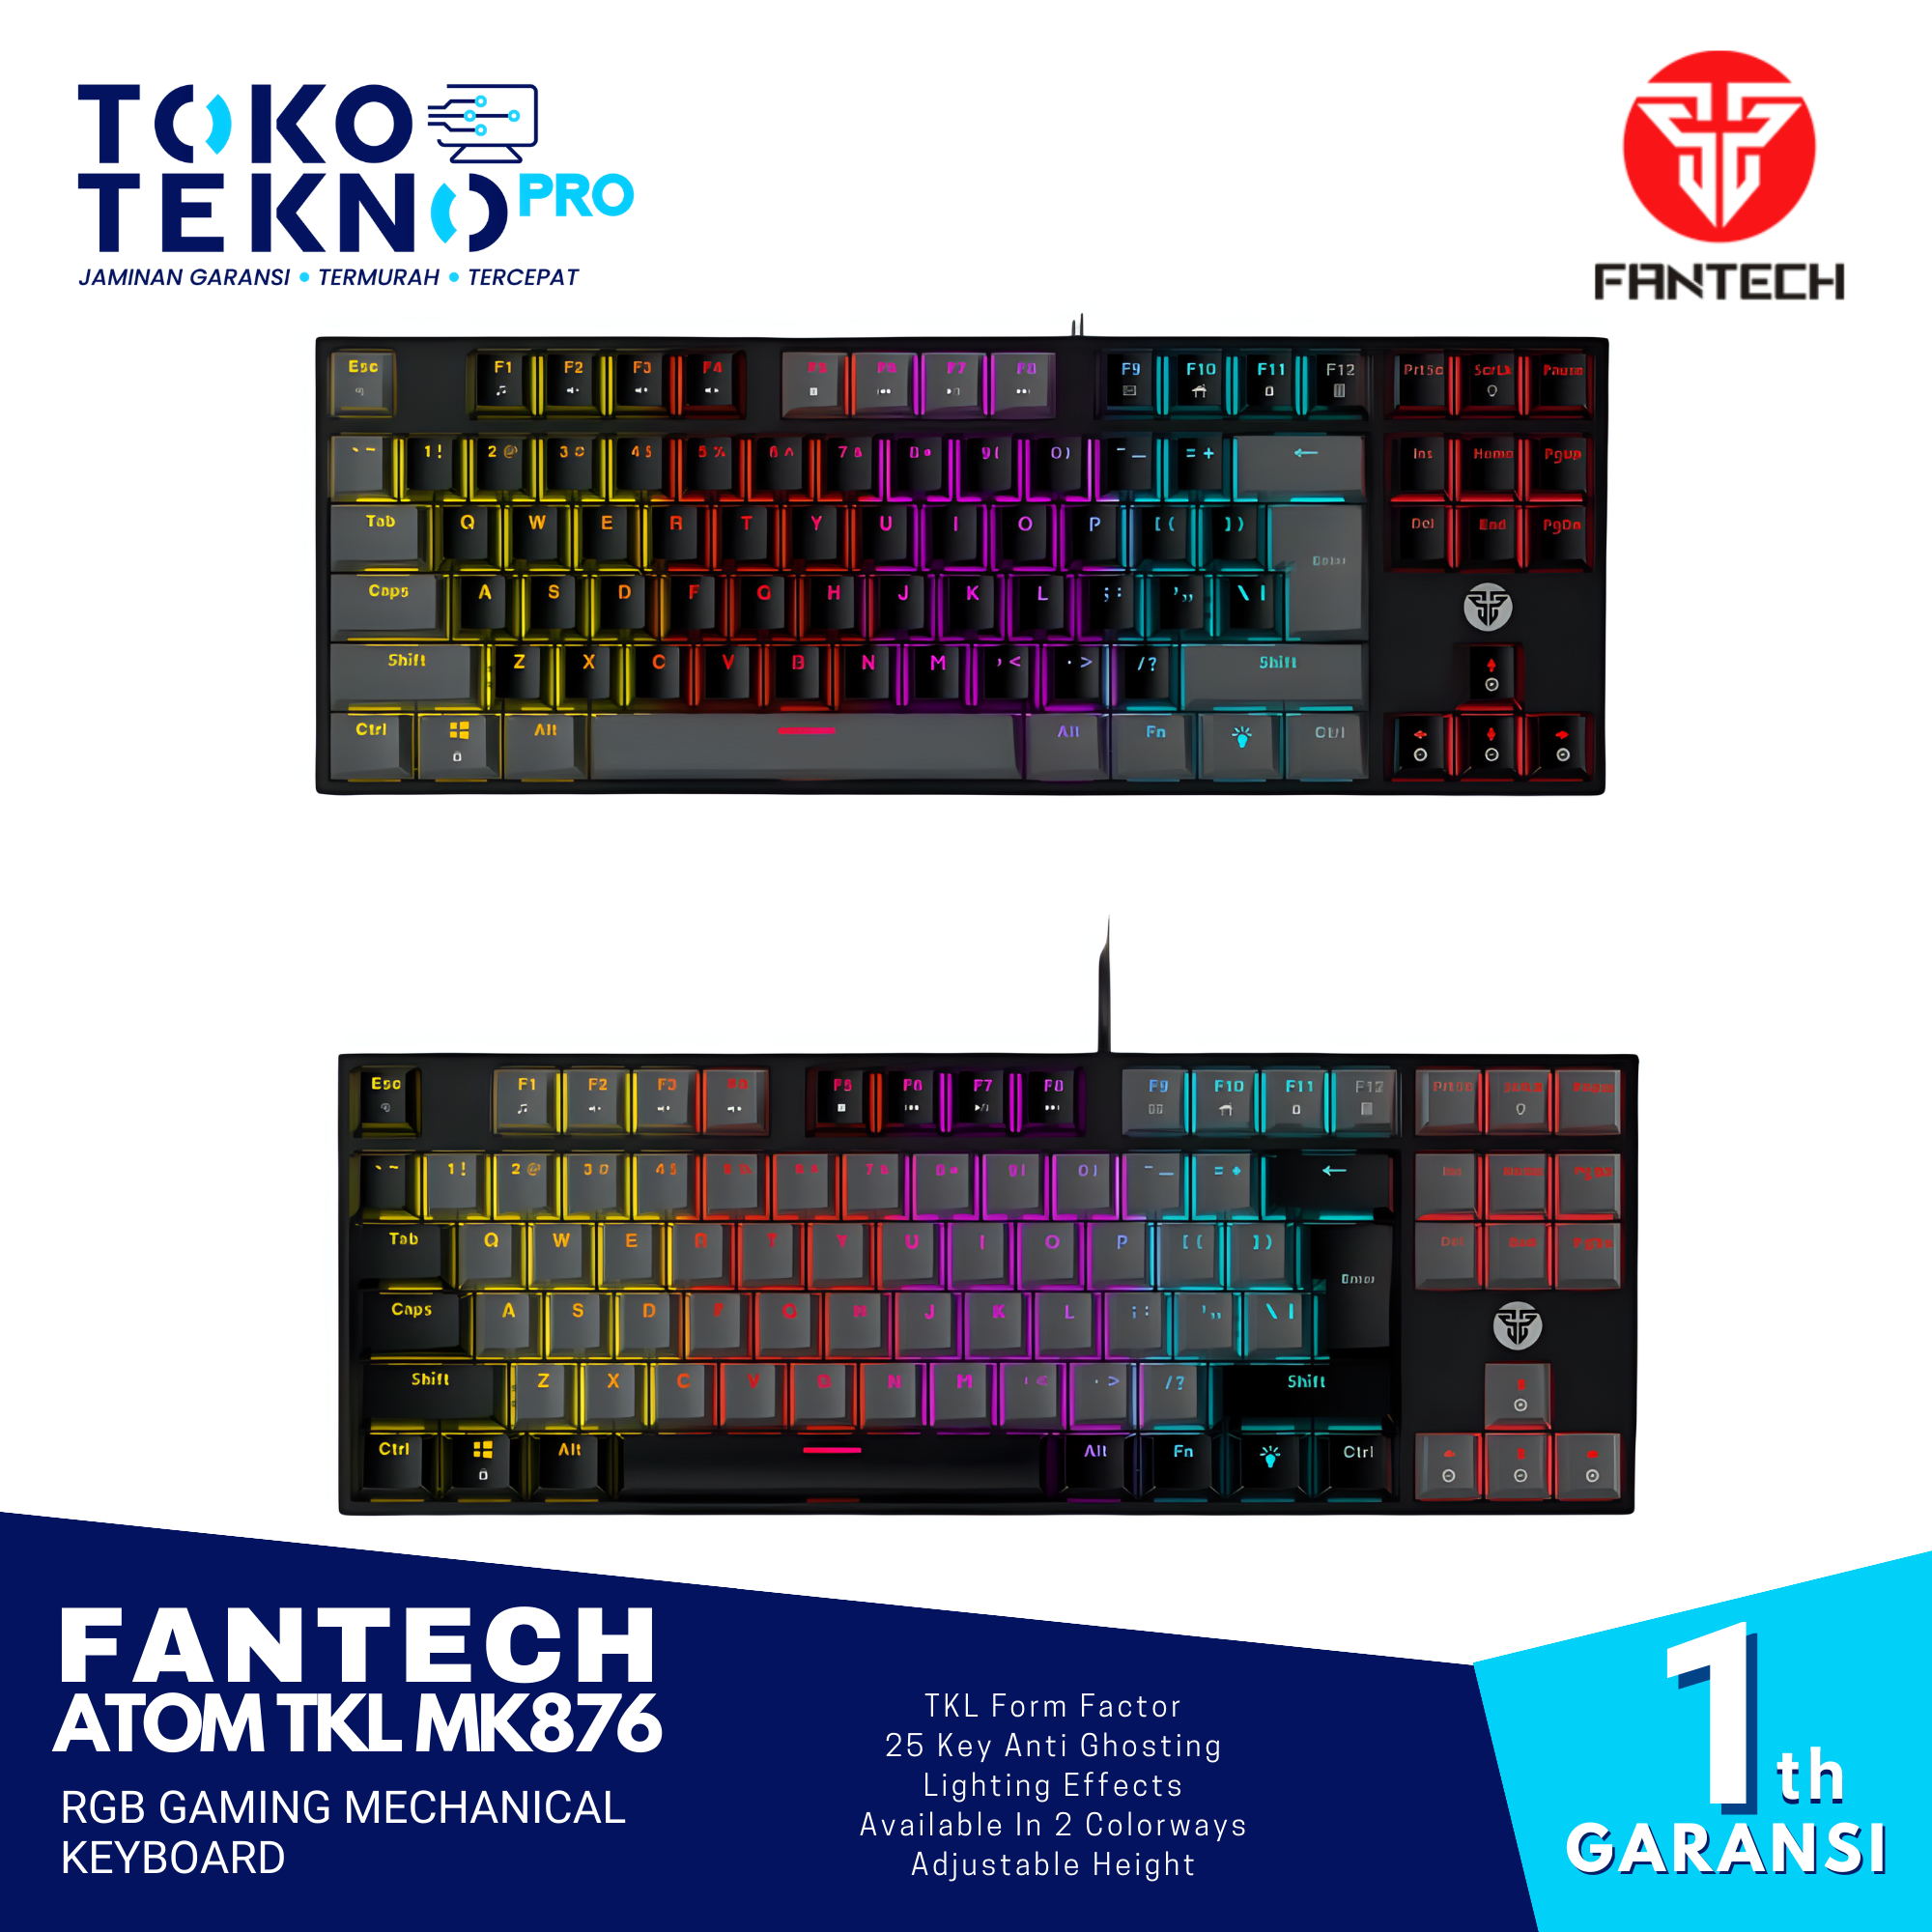 Fantech ATOM TKL MK876 RGB Gaming Mechanical Keyboard